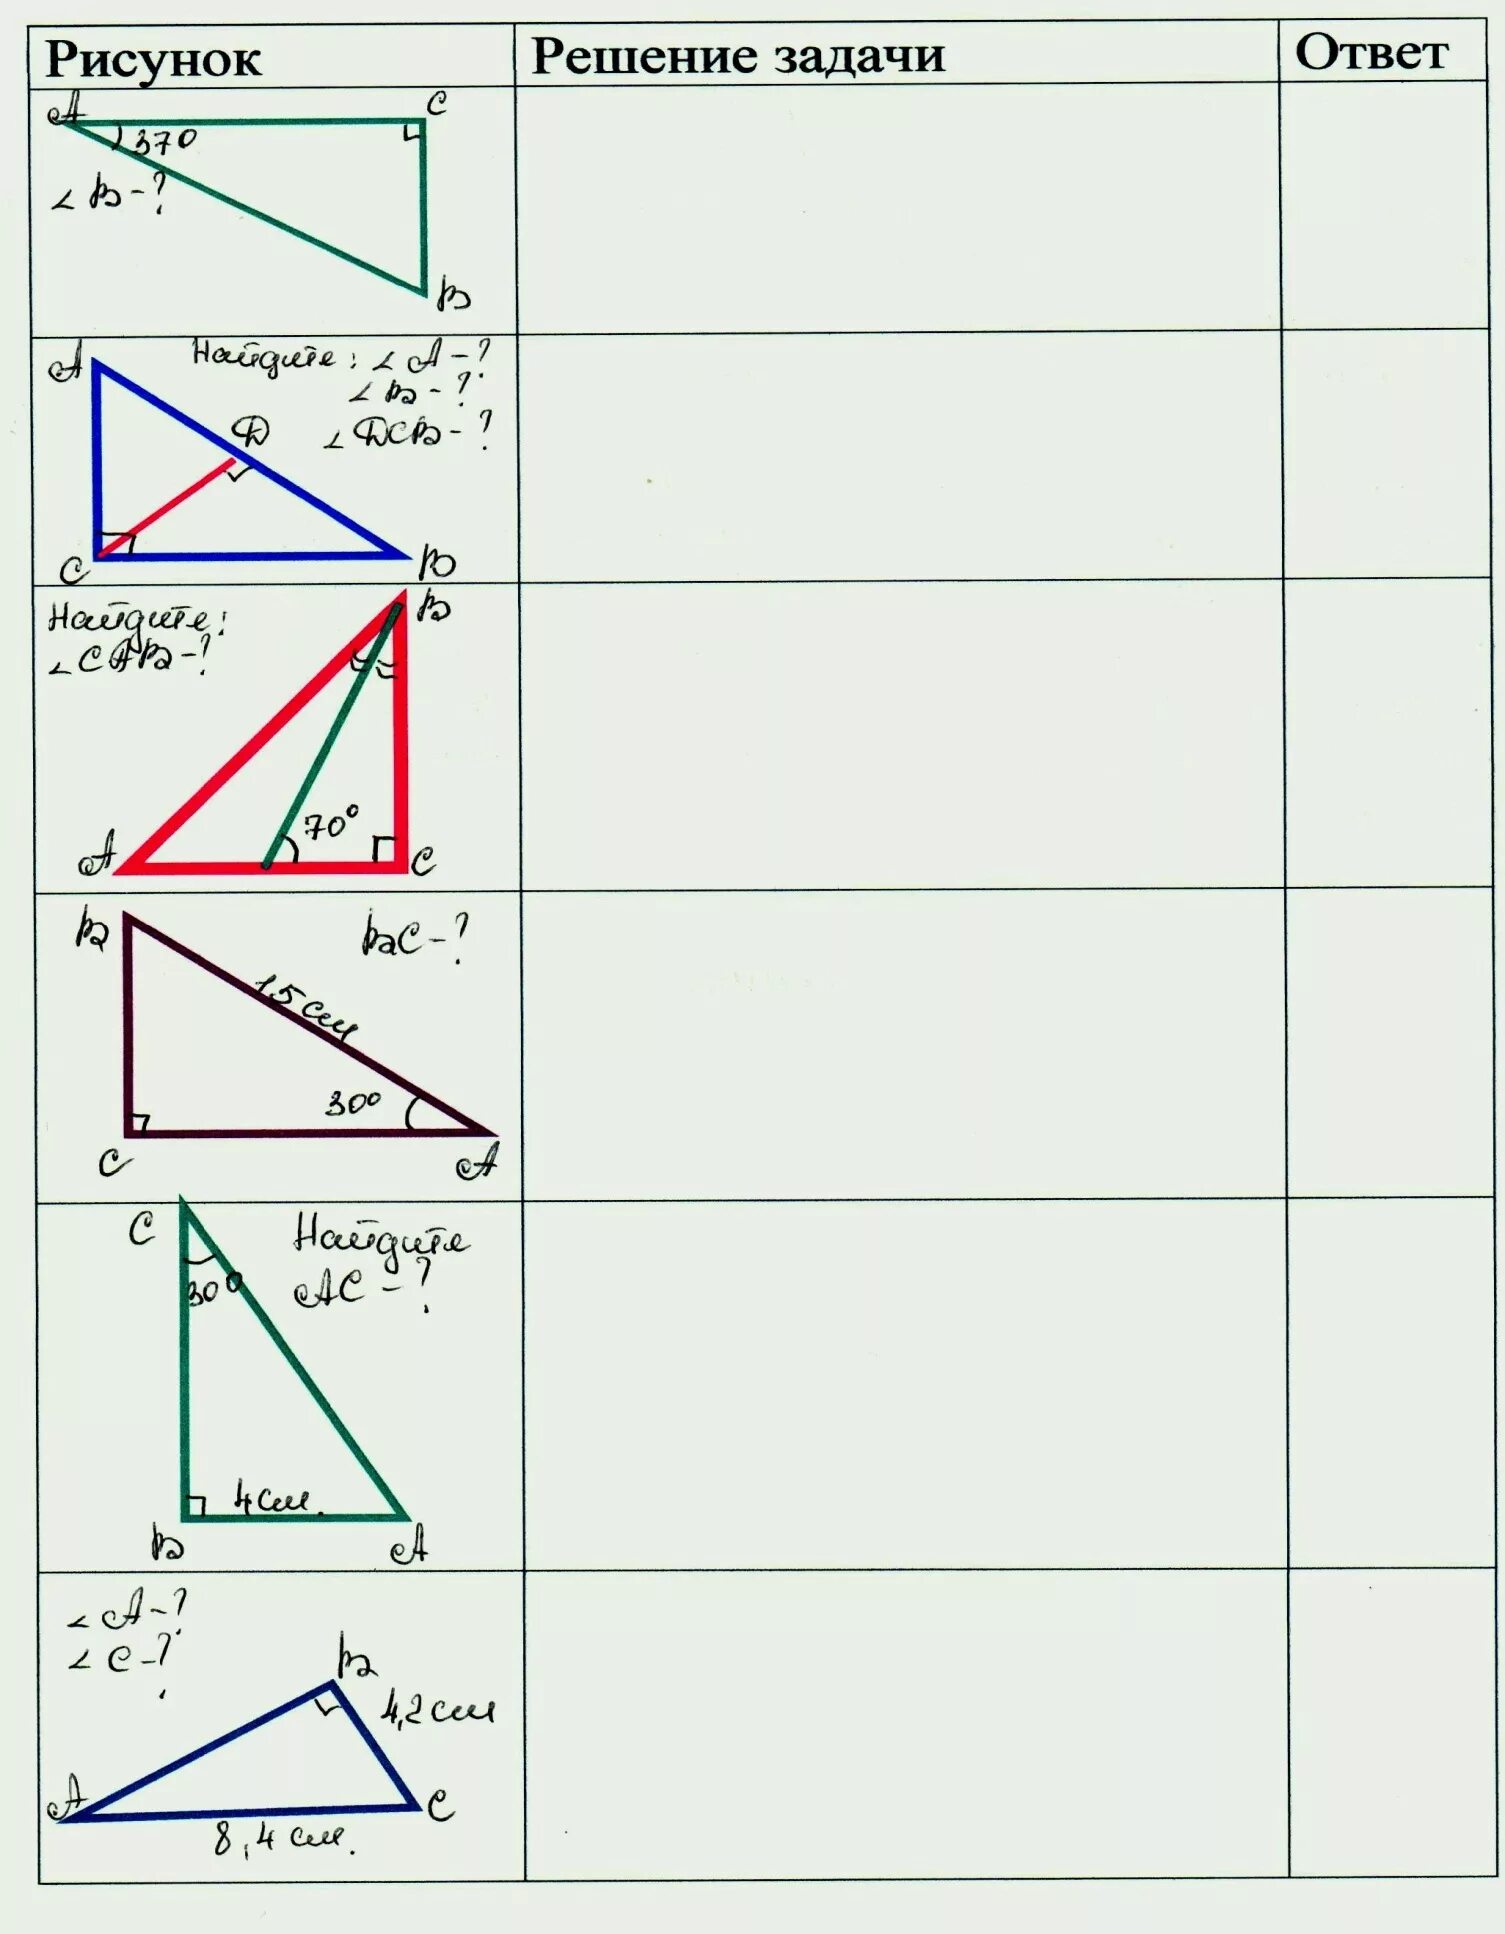 Геометрия 7 класс прямоугольные треугольники решение задач. Задачи по геометрии 7 прямоугольный треугольник. Прямоугольный треугольник задачи на готовых чертежах 7 класс. Прямоугольный треугольник решение задач по готовым чертежам 7 класс. Задачи по геометрии 7 класс прямоугольные треугольники.